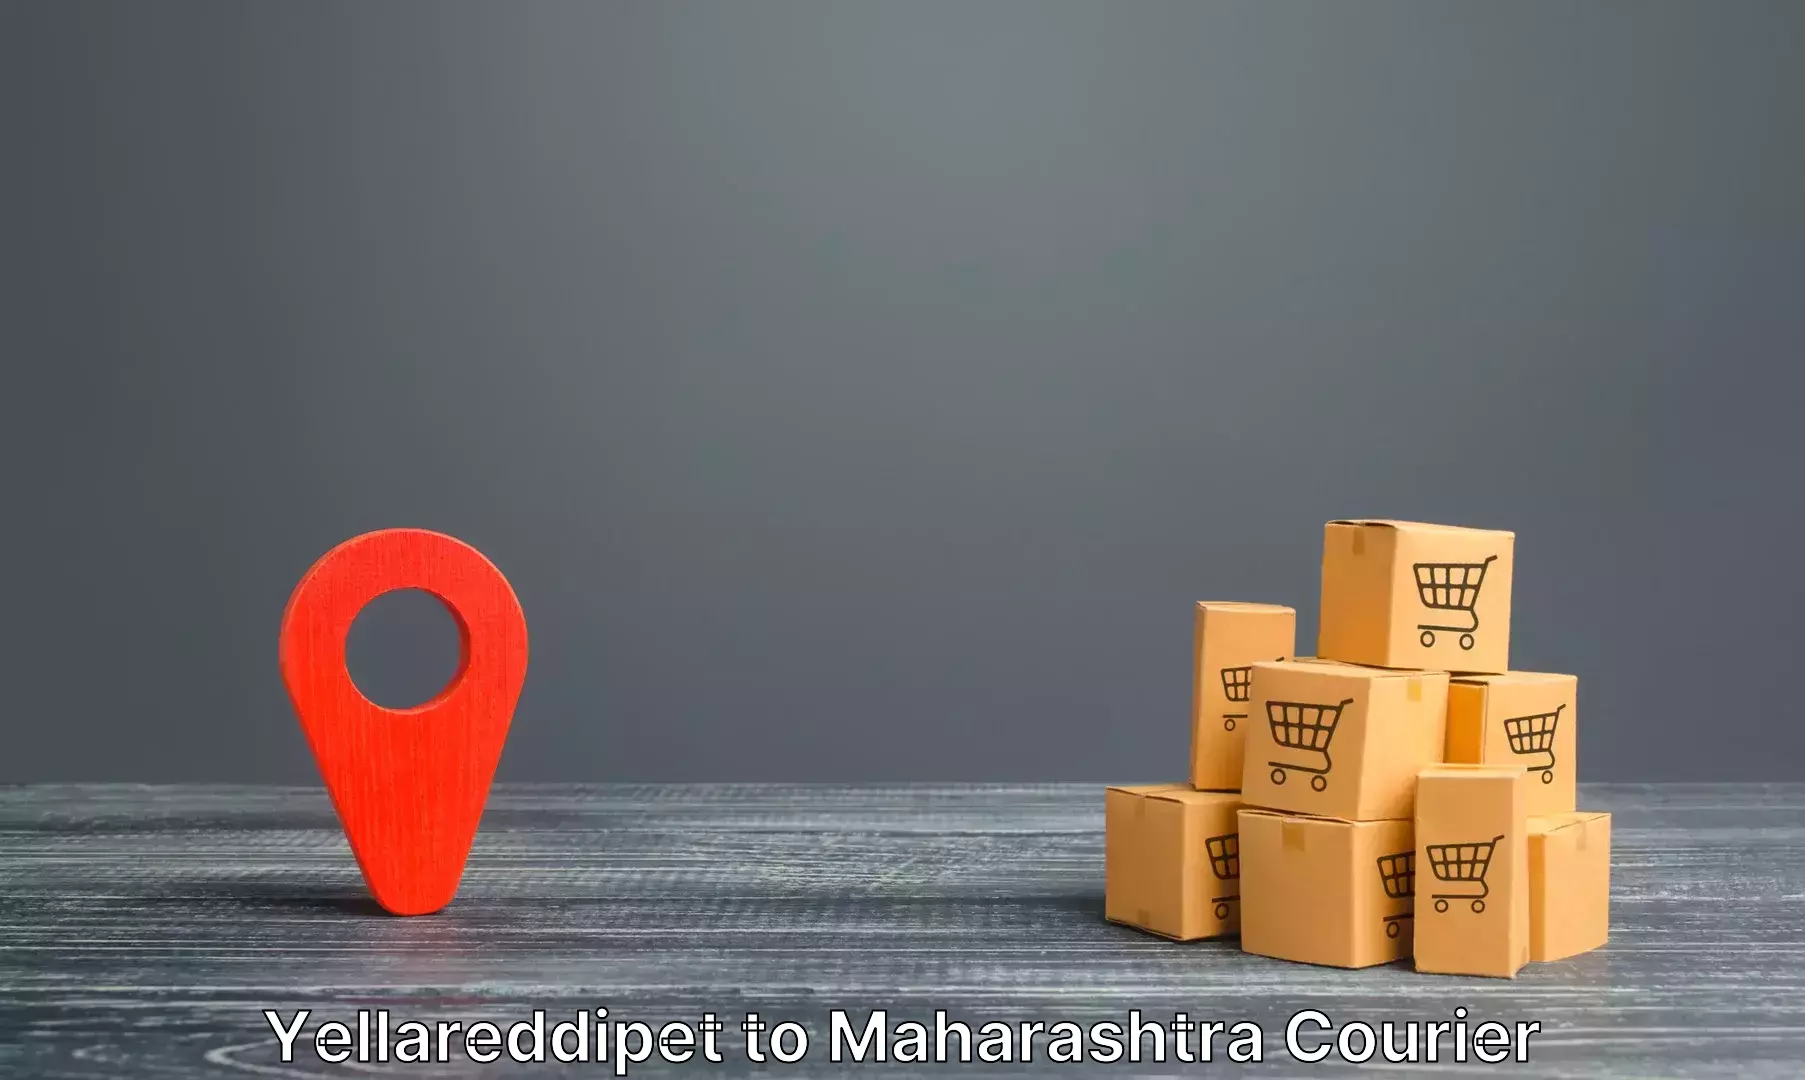 Luggage delivery app Yellareddipet to Borivali